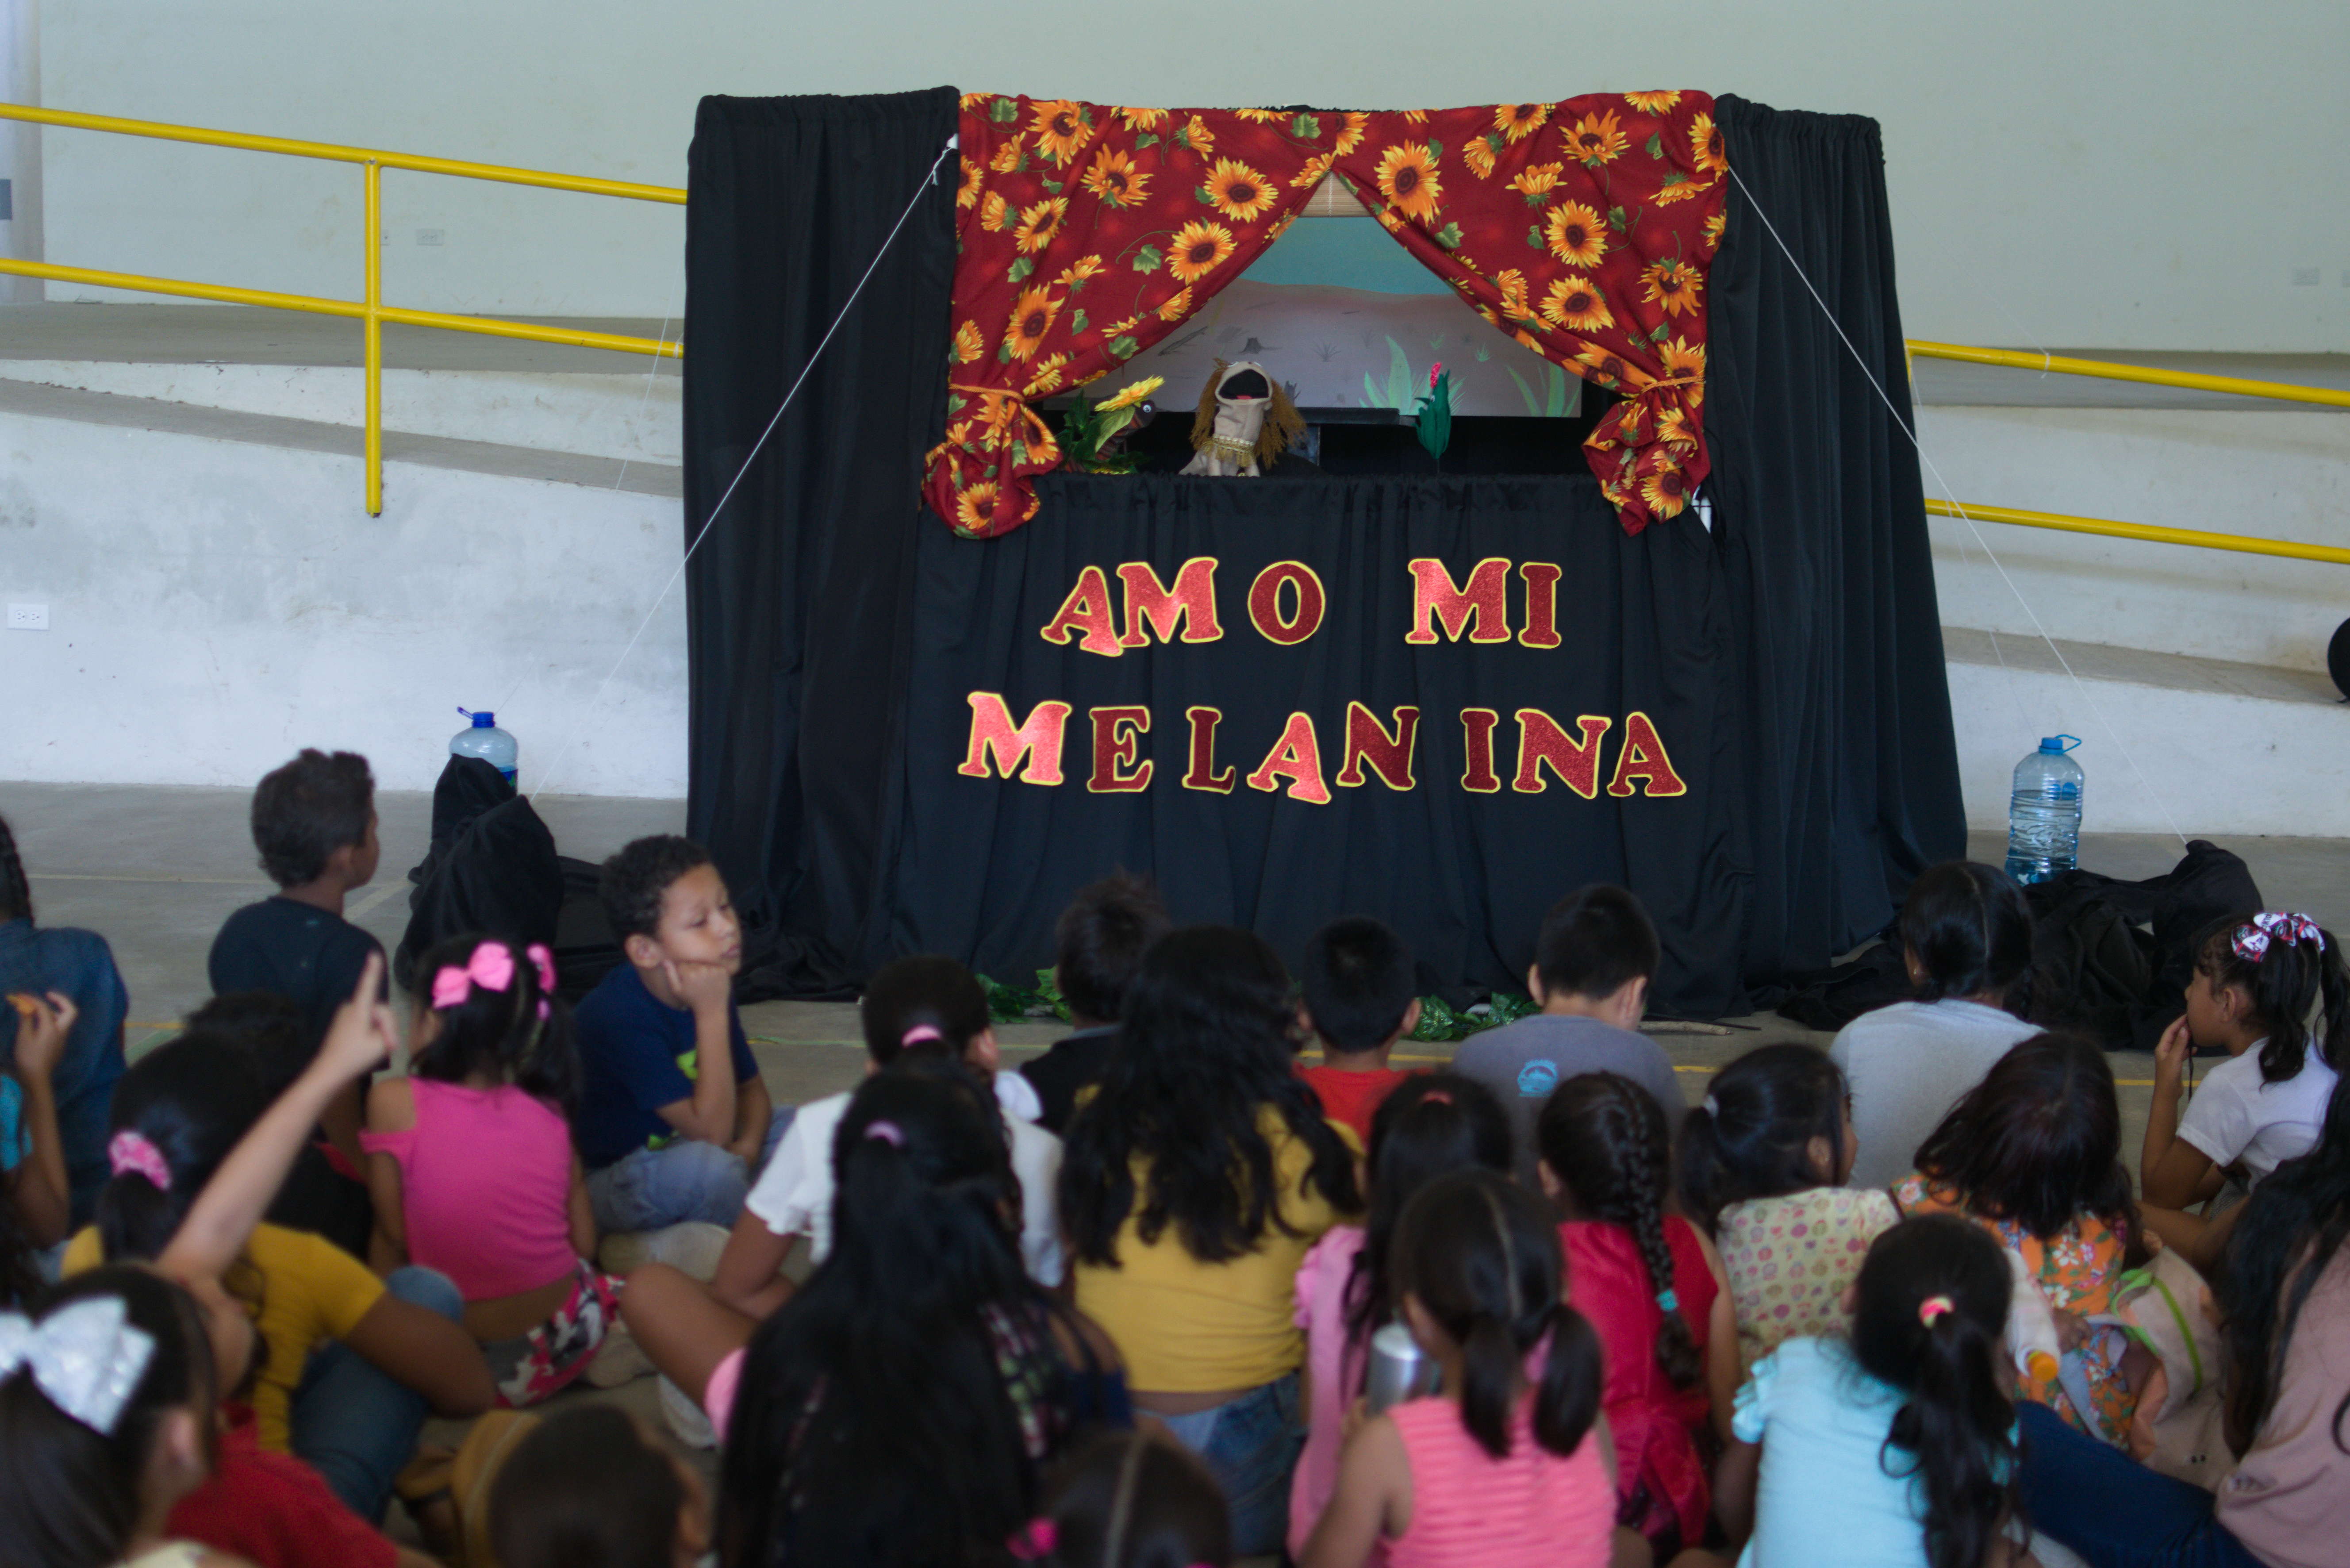 Obra de Teatro "Amo mi melanina". Foto por Esteban Umaña.